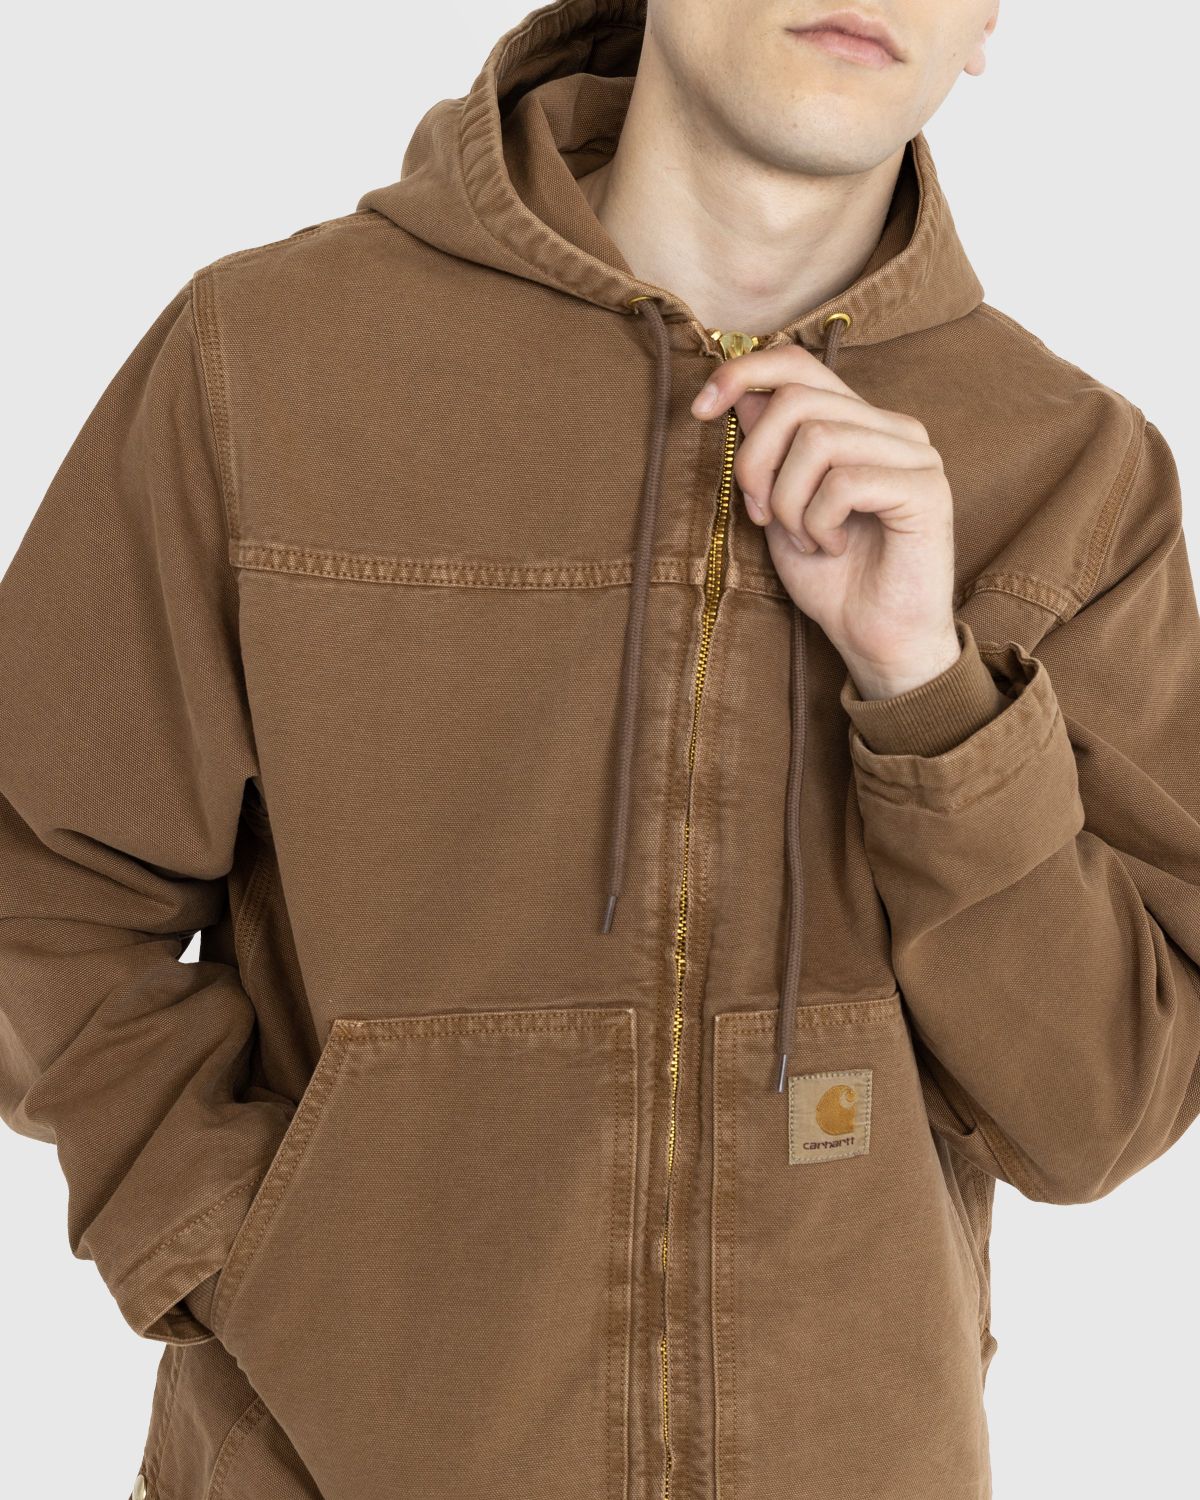 Carhartt W.I.P. Monterey Shirt Jacket Tamarind Worn Washed